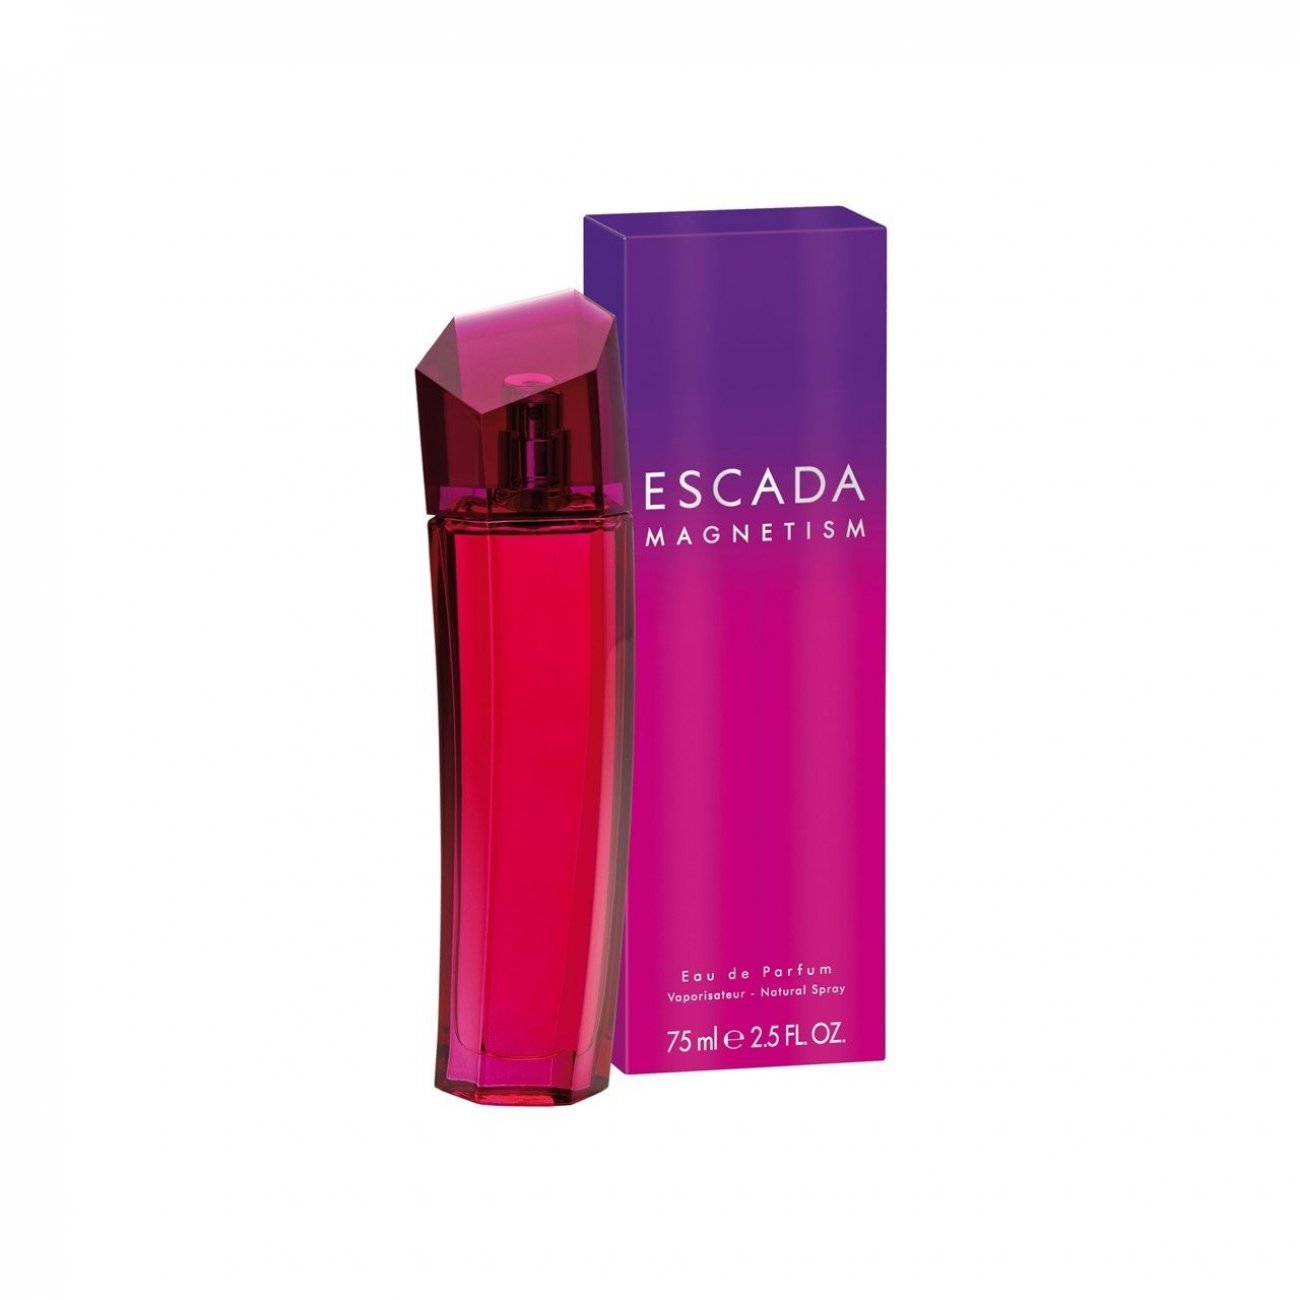 Ensomhed dollar Overskyet Buy Escada Magnetism Eau de Parfum · USA